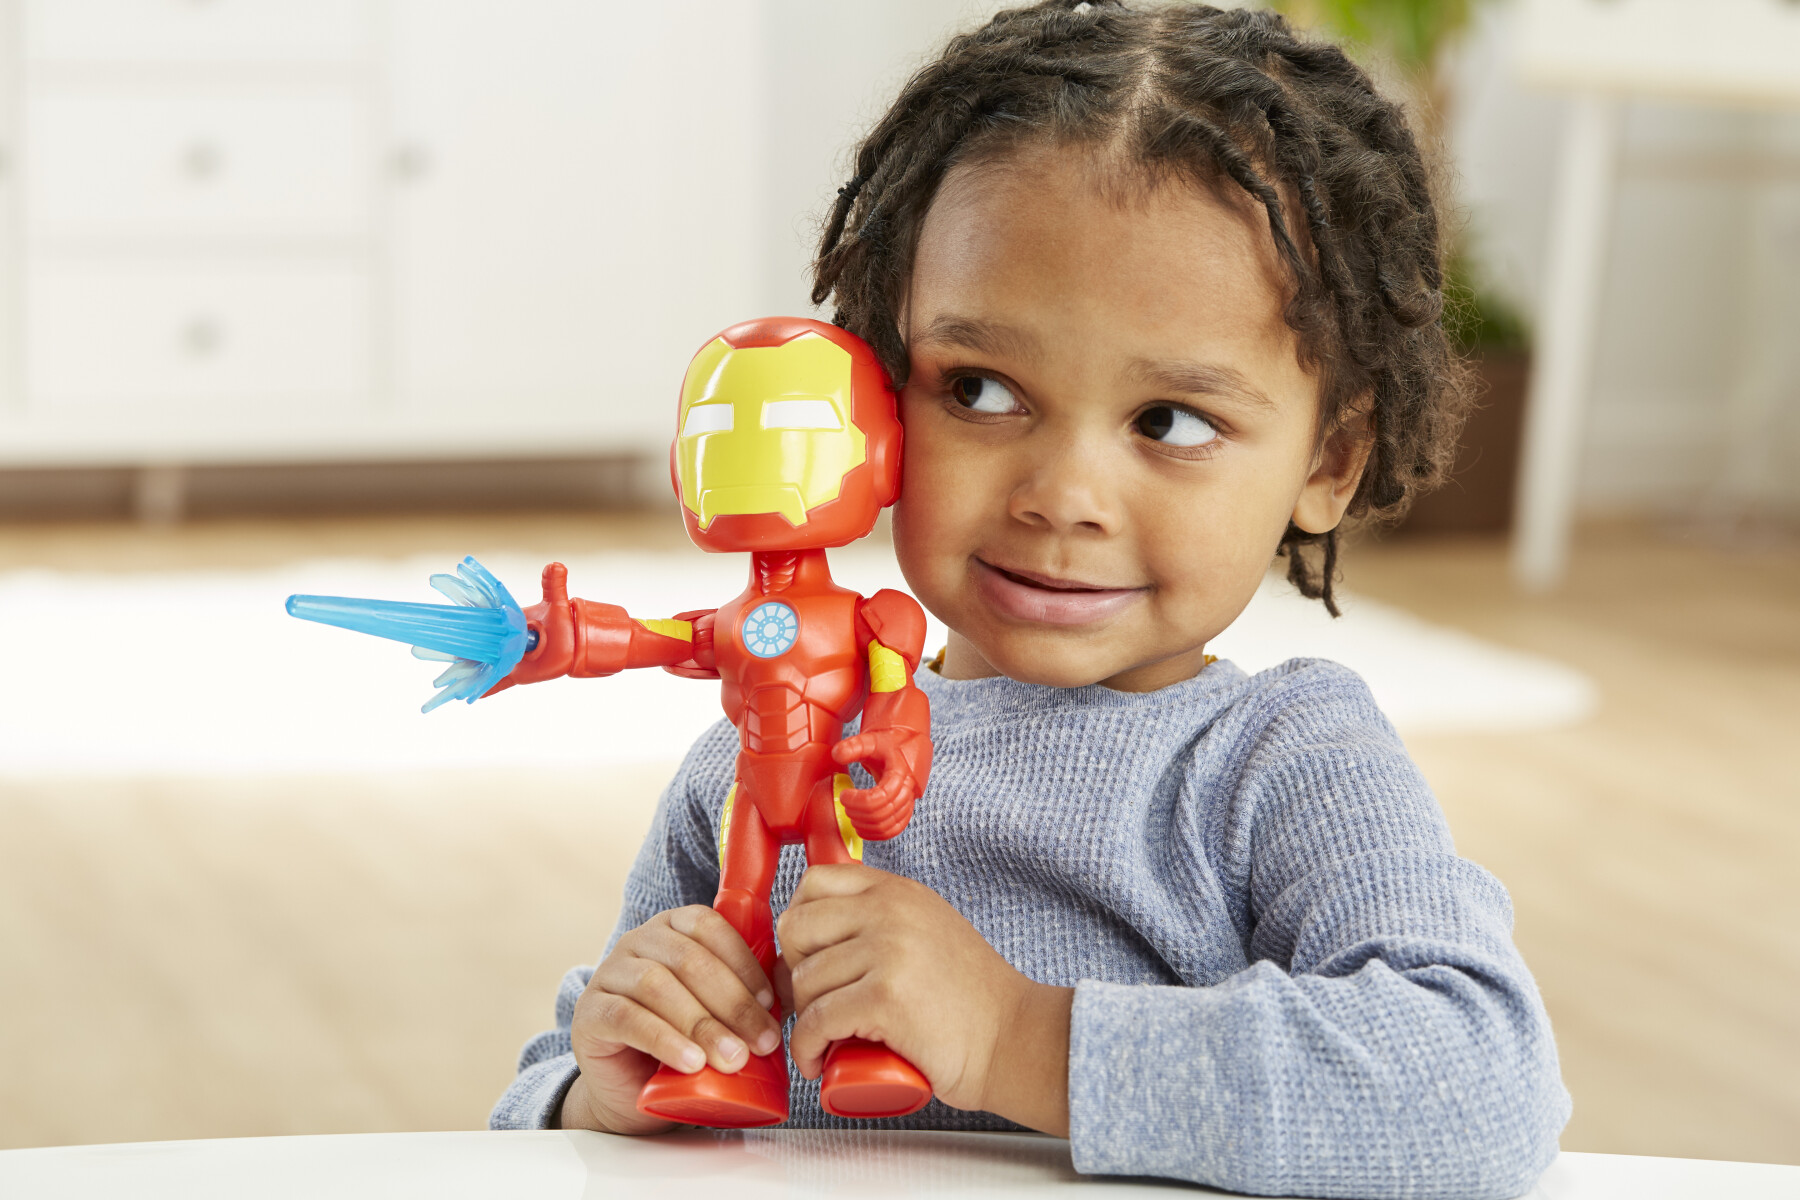 Hasbro marvel spidey e i suoi fantastici amici, mega iron man, action figure giocattolo super hero per età prescolare, per bambini e bambine dai 3 anni in su - SPIDEY